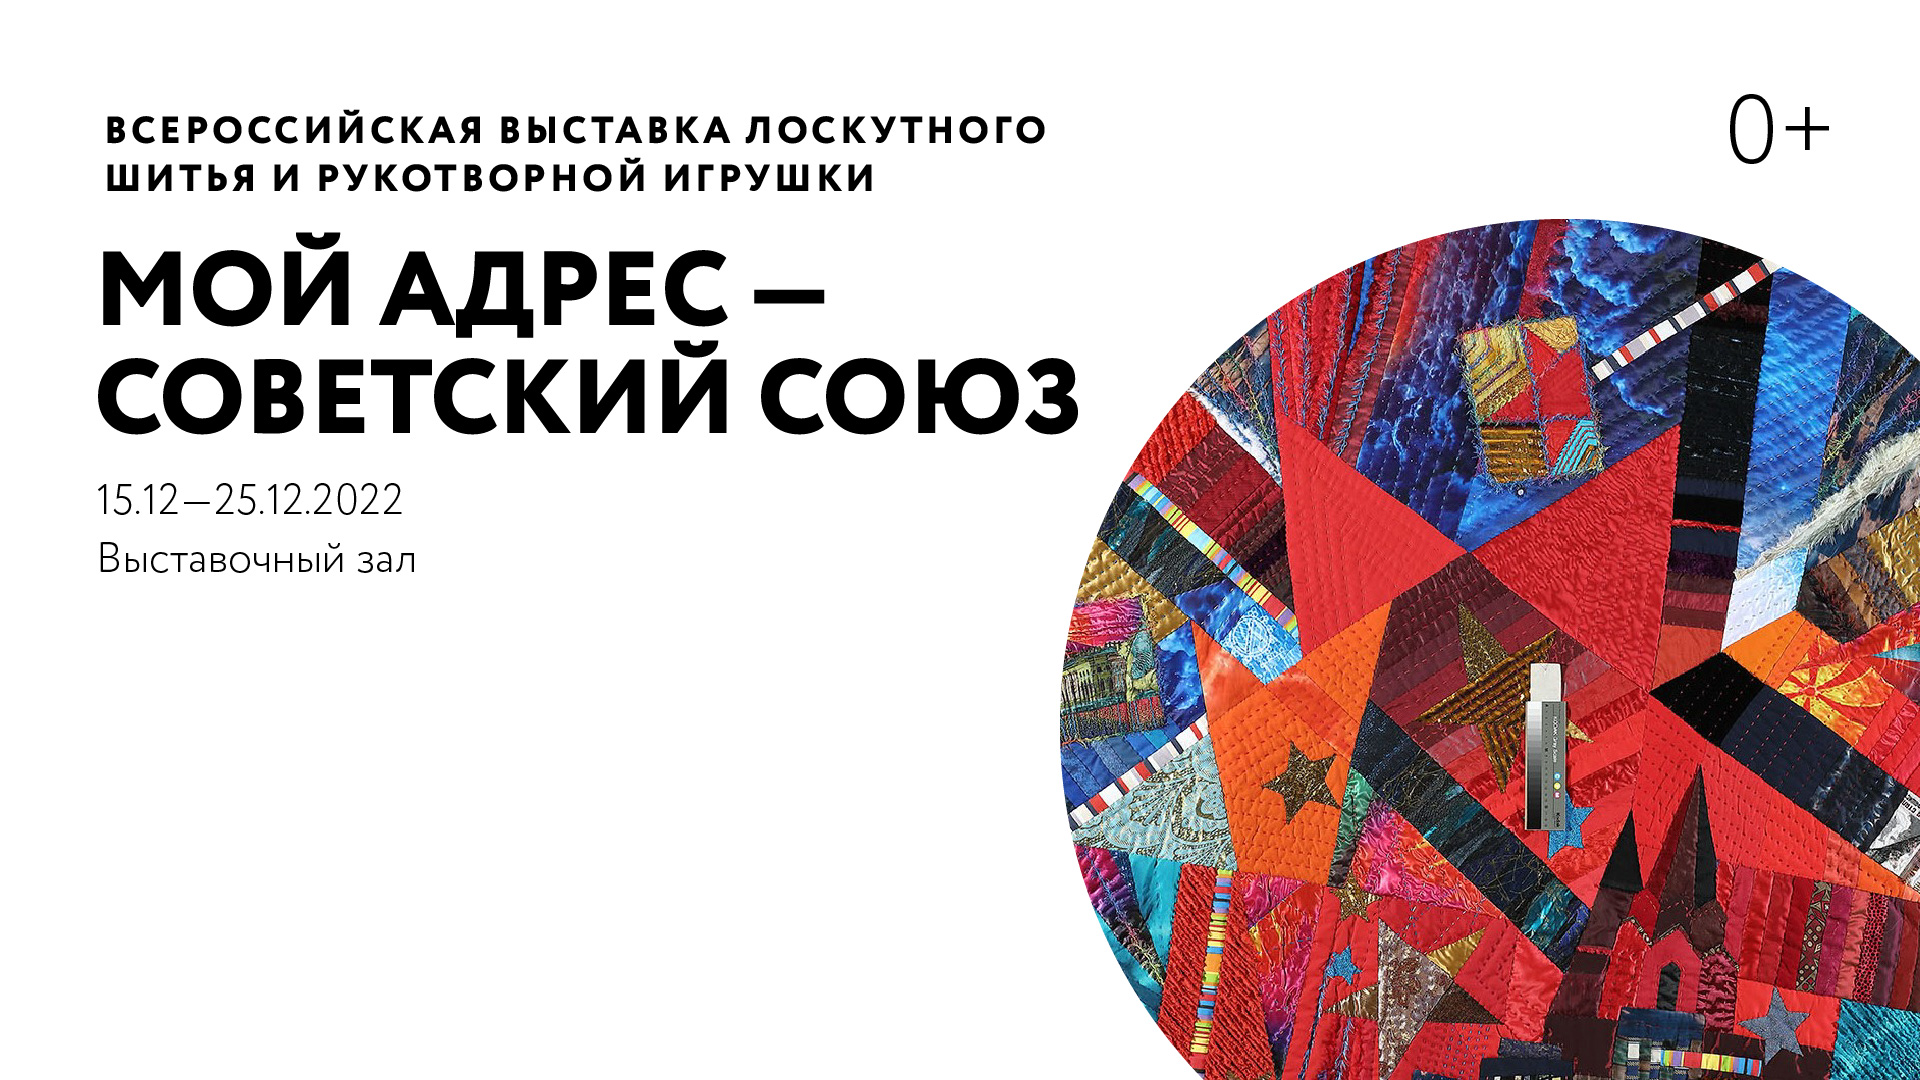 Всероссийская выставка лоскутного шитья и рукотворной игрушки «Мой адрес — Советский Союз»